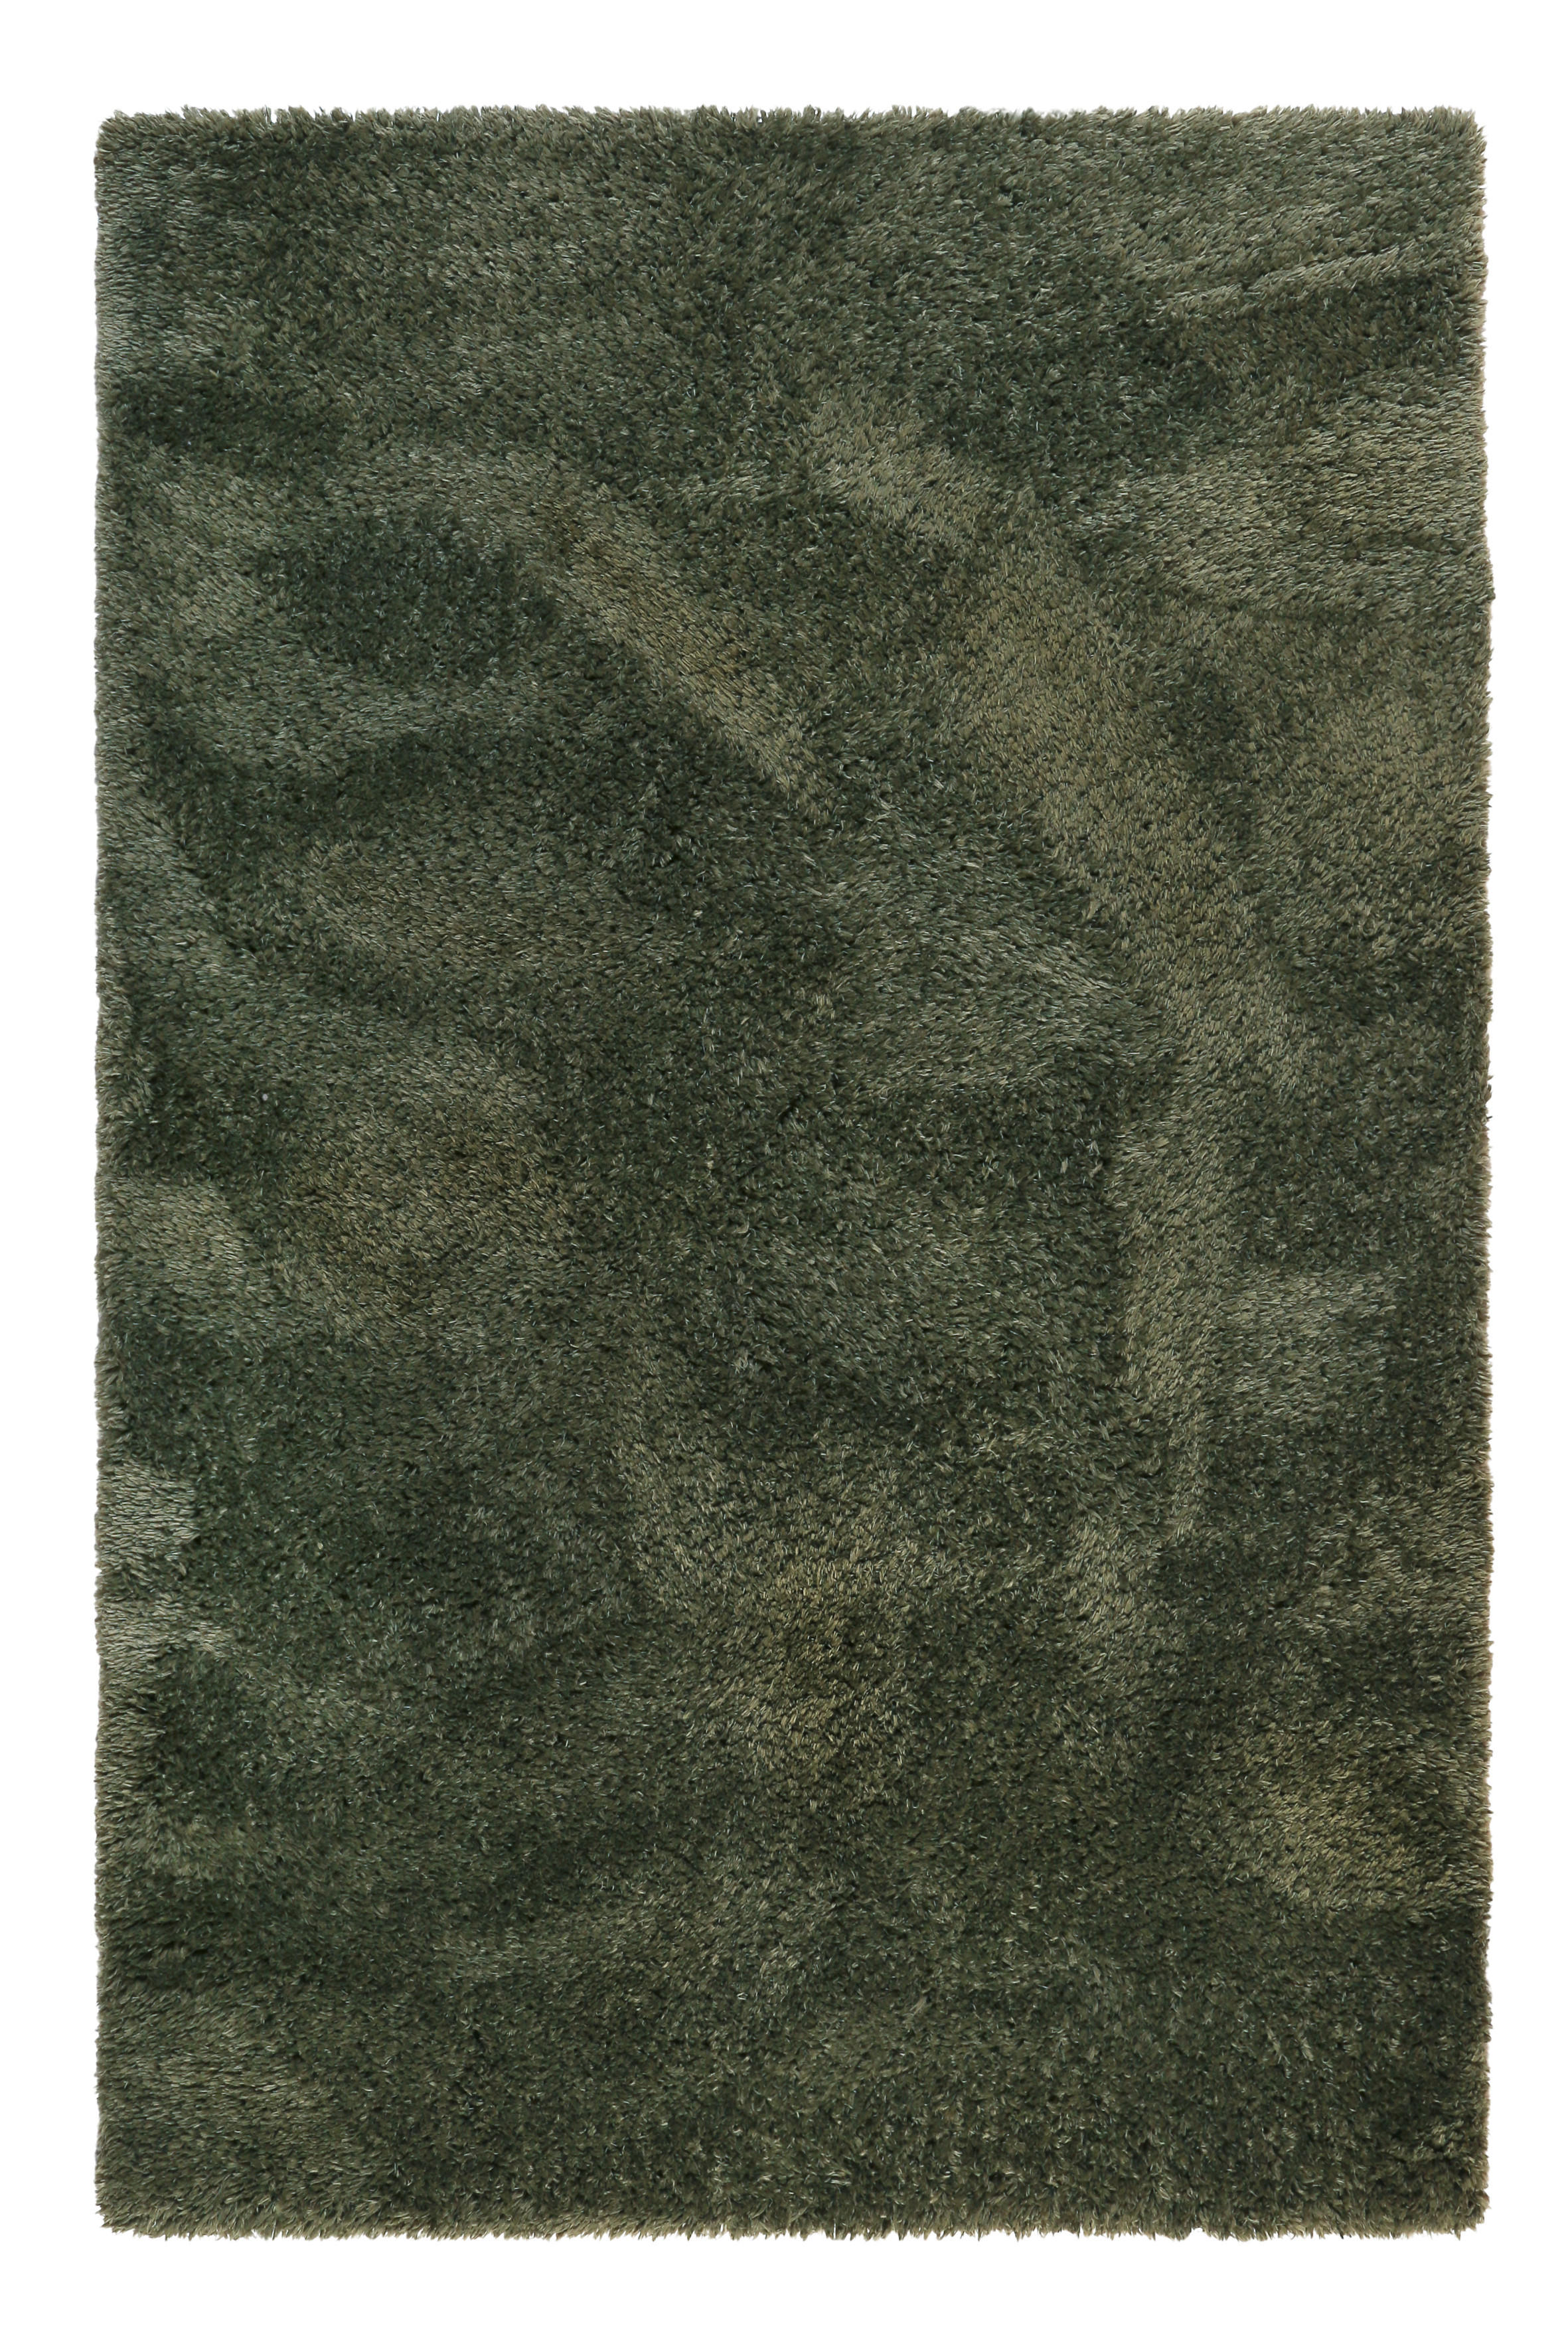 HOCHFLORTEPPICH 80/150 cm Yogi  - Olivgrün, KONVENTIONELL, Textil (80/150cm) - Esprit